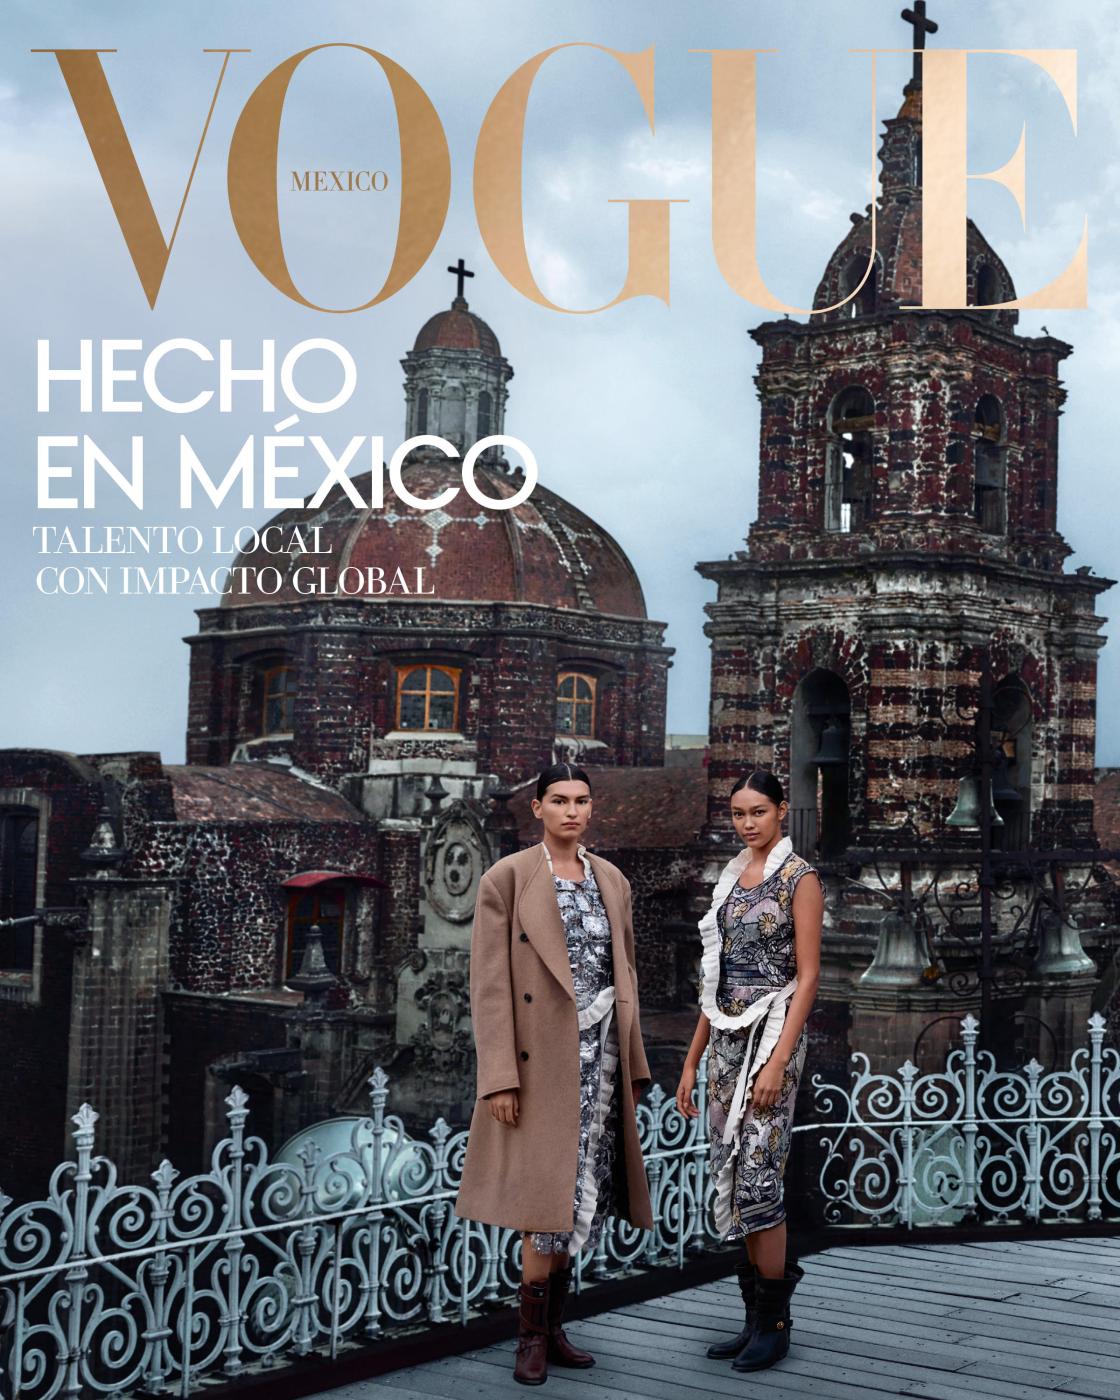 Publication in VOGUE México y Latinoamérica